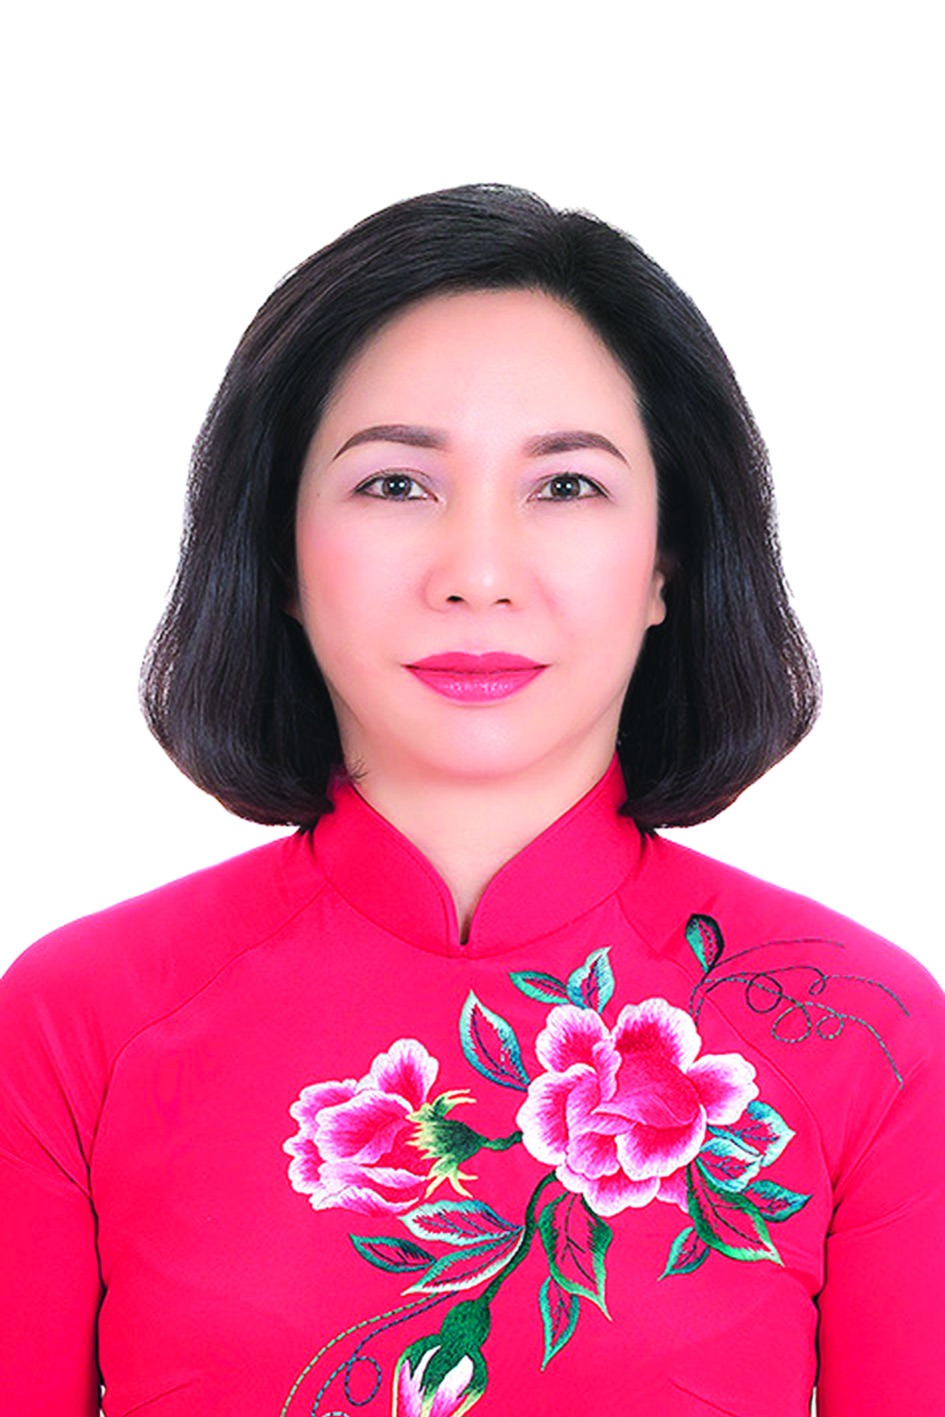 Chương trình hành động của Giám đốc Sở Nội vụ Hà Nội Vũ Thu Hà, ứng cử viên đại biểu HĐND TP Hà Nội nhiệm kỳ 2021 - 2026 - Ảnh 1